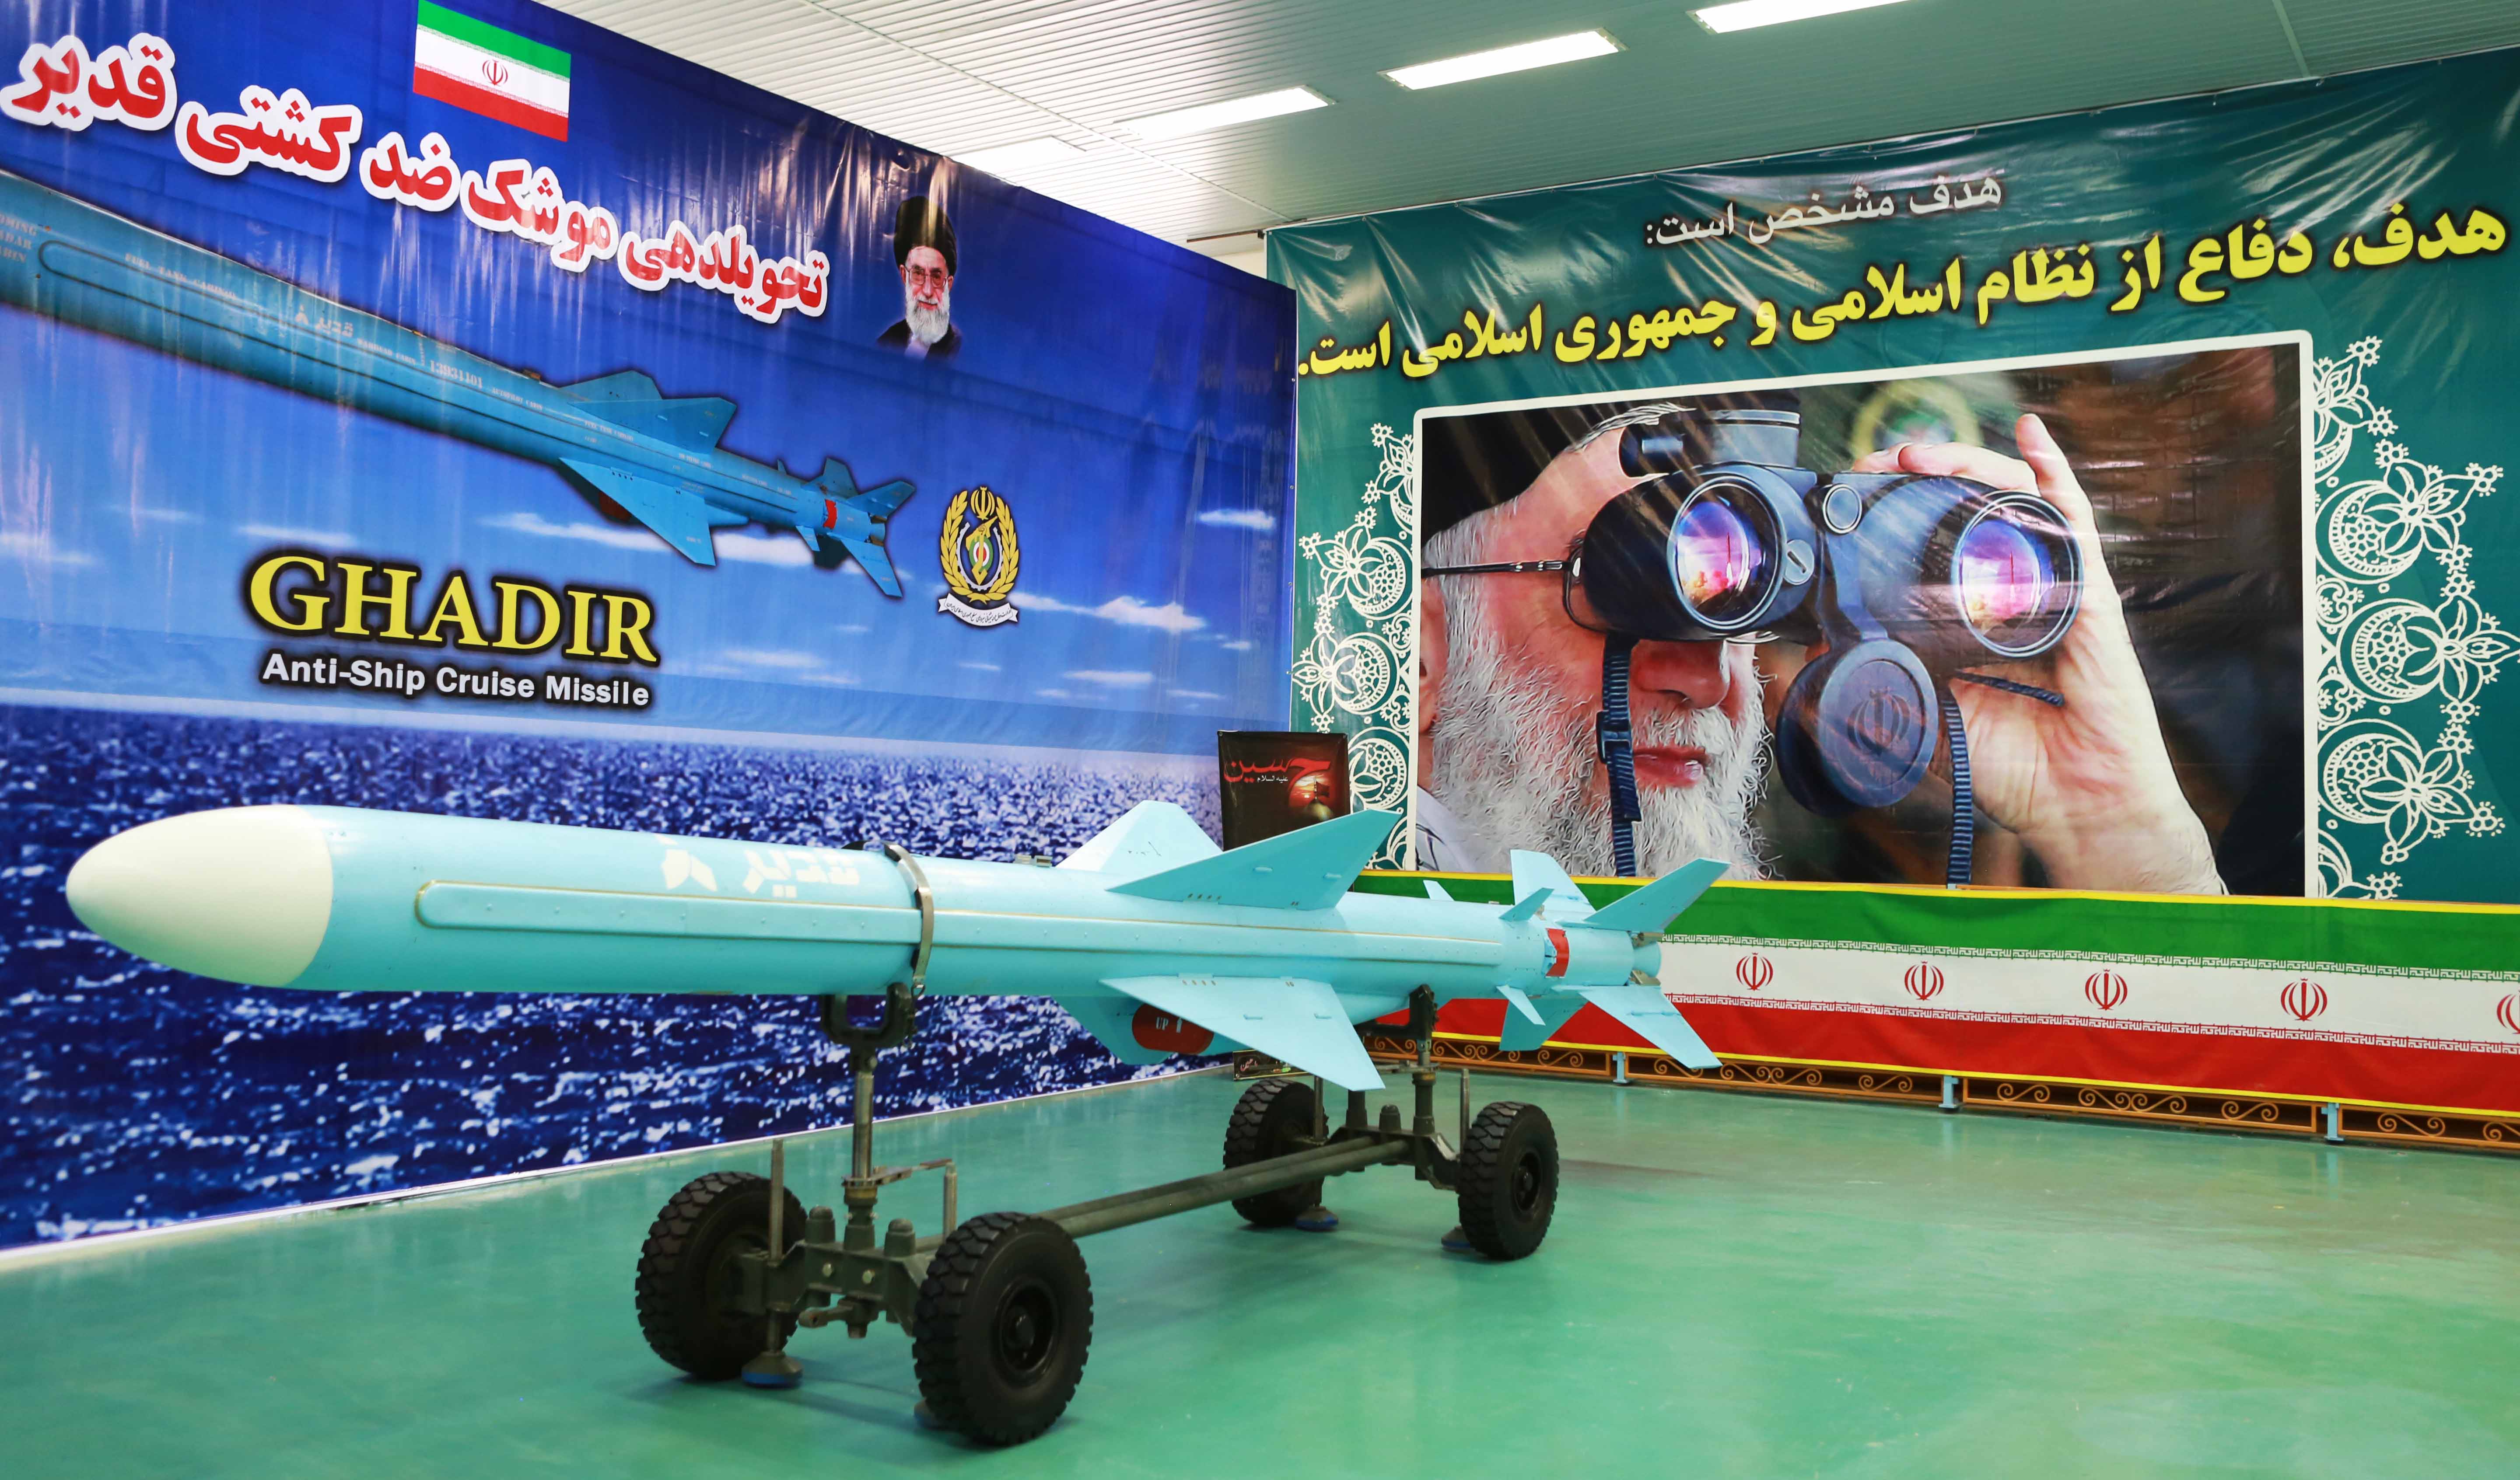 تجهیز نیروی دریایی راهبردی ارتش جمهوری اسلامی ایران به موشک کروز دریایی قدیر+تصاویر